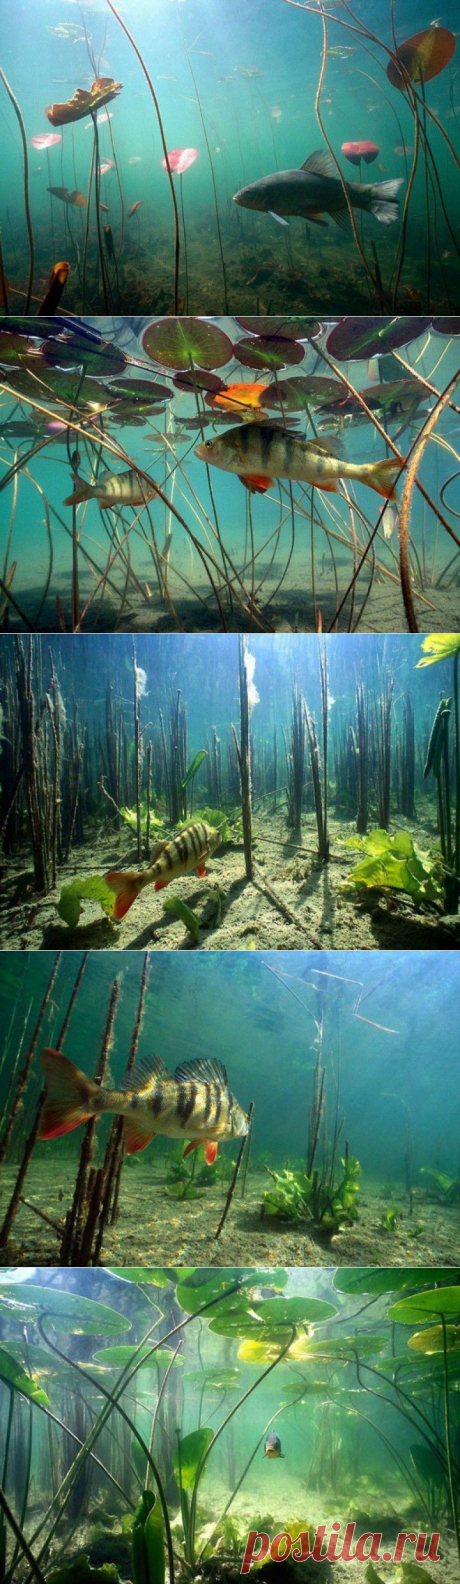 Речная подводная жизнь. | ЛЮБИМЫЕ ФОТО